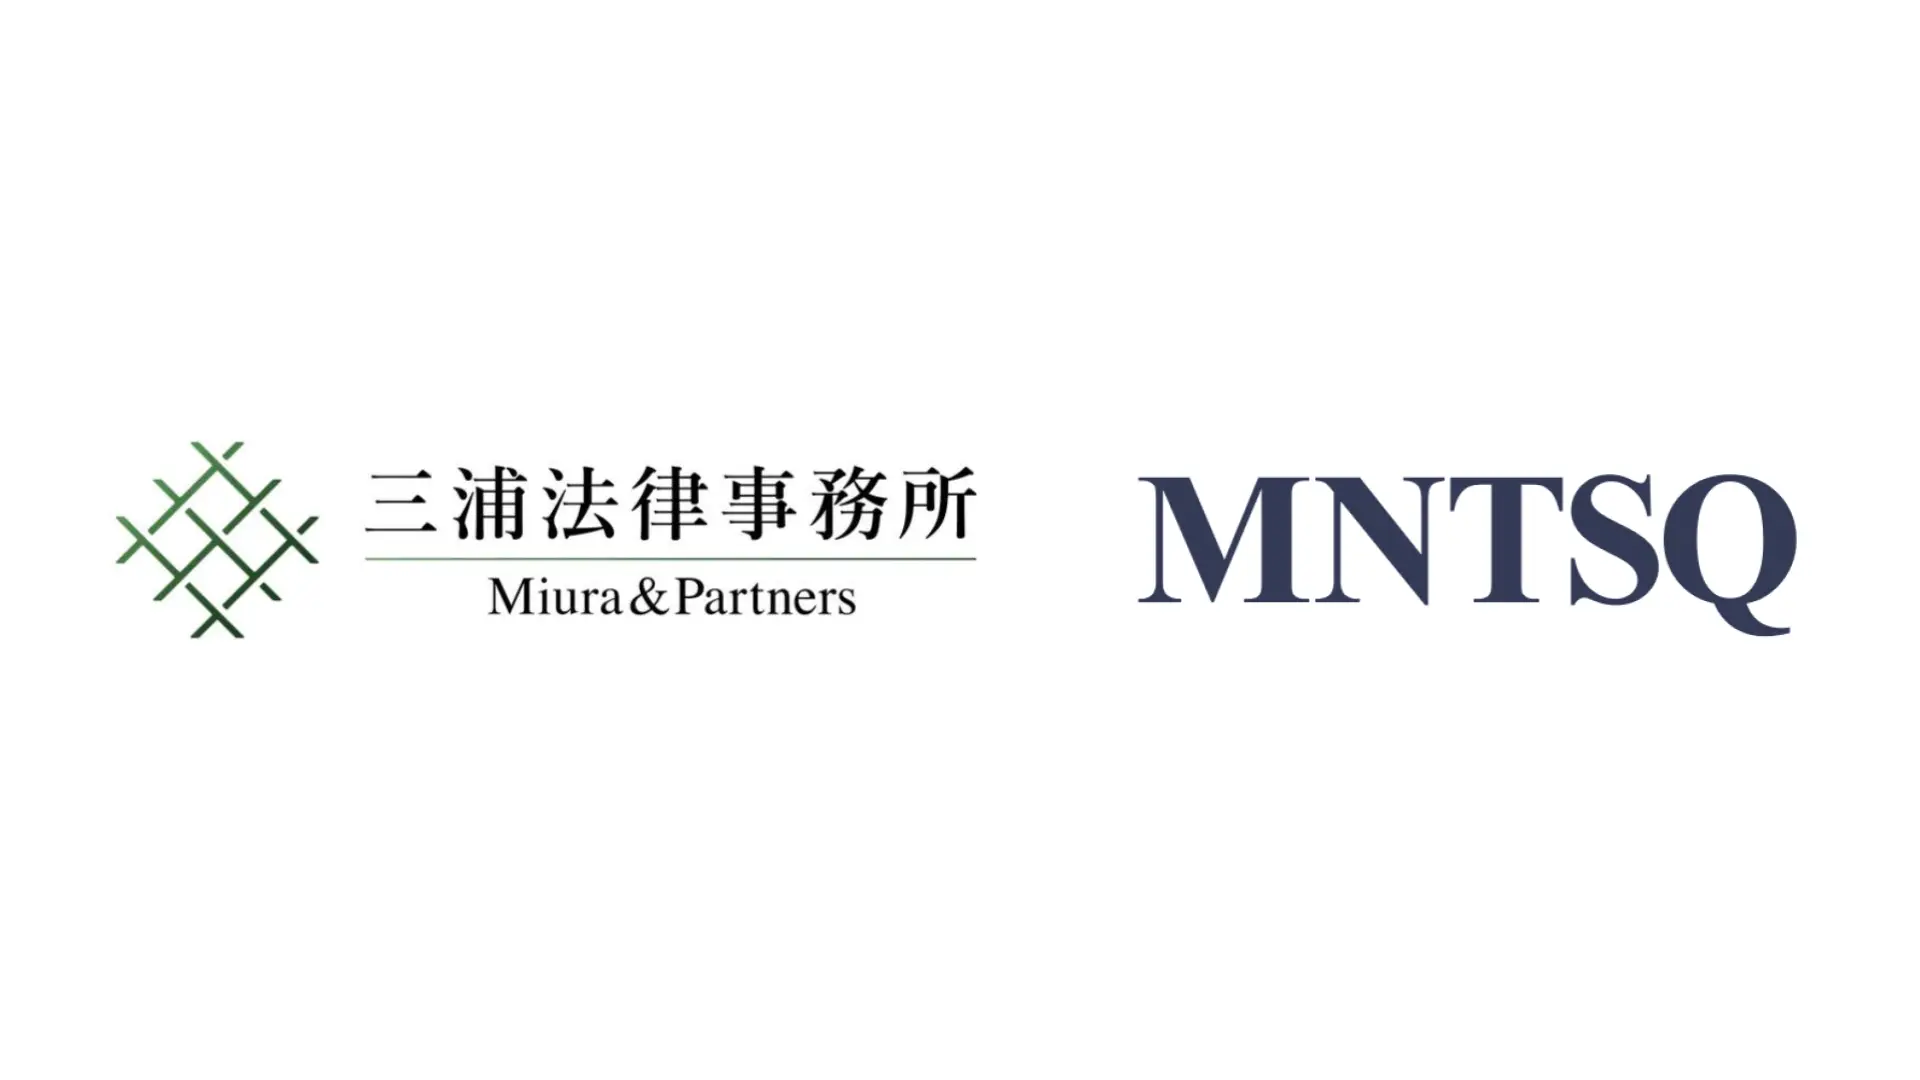 三浦法律事務所、「MNTSQ CLM」を採用し、ナレッジマネジメント基盤を強固に